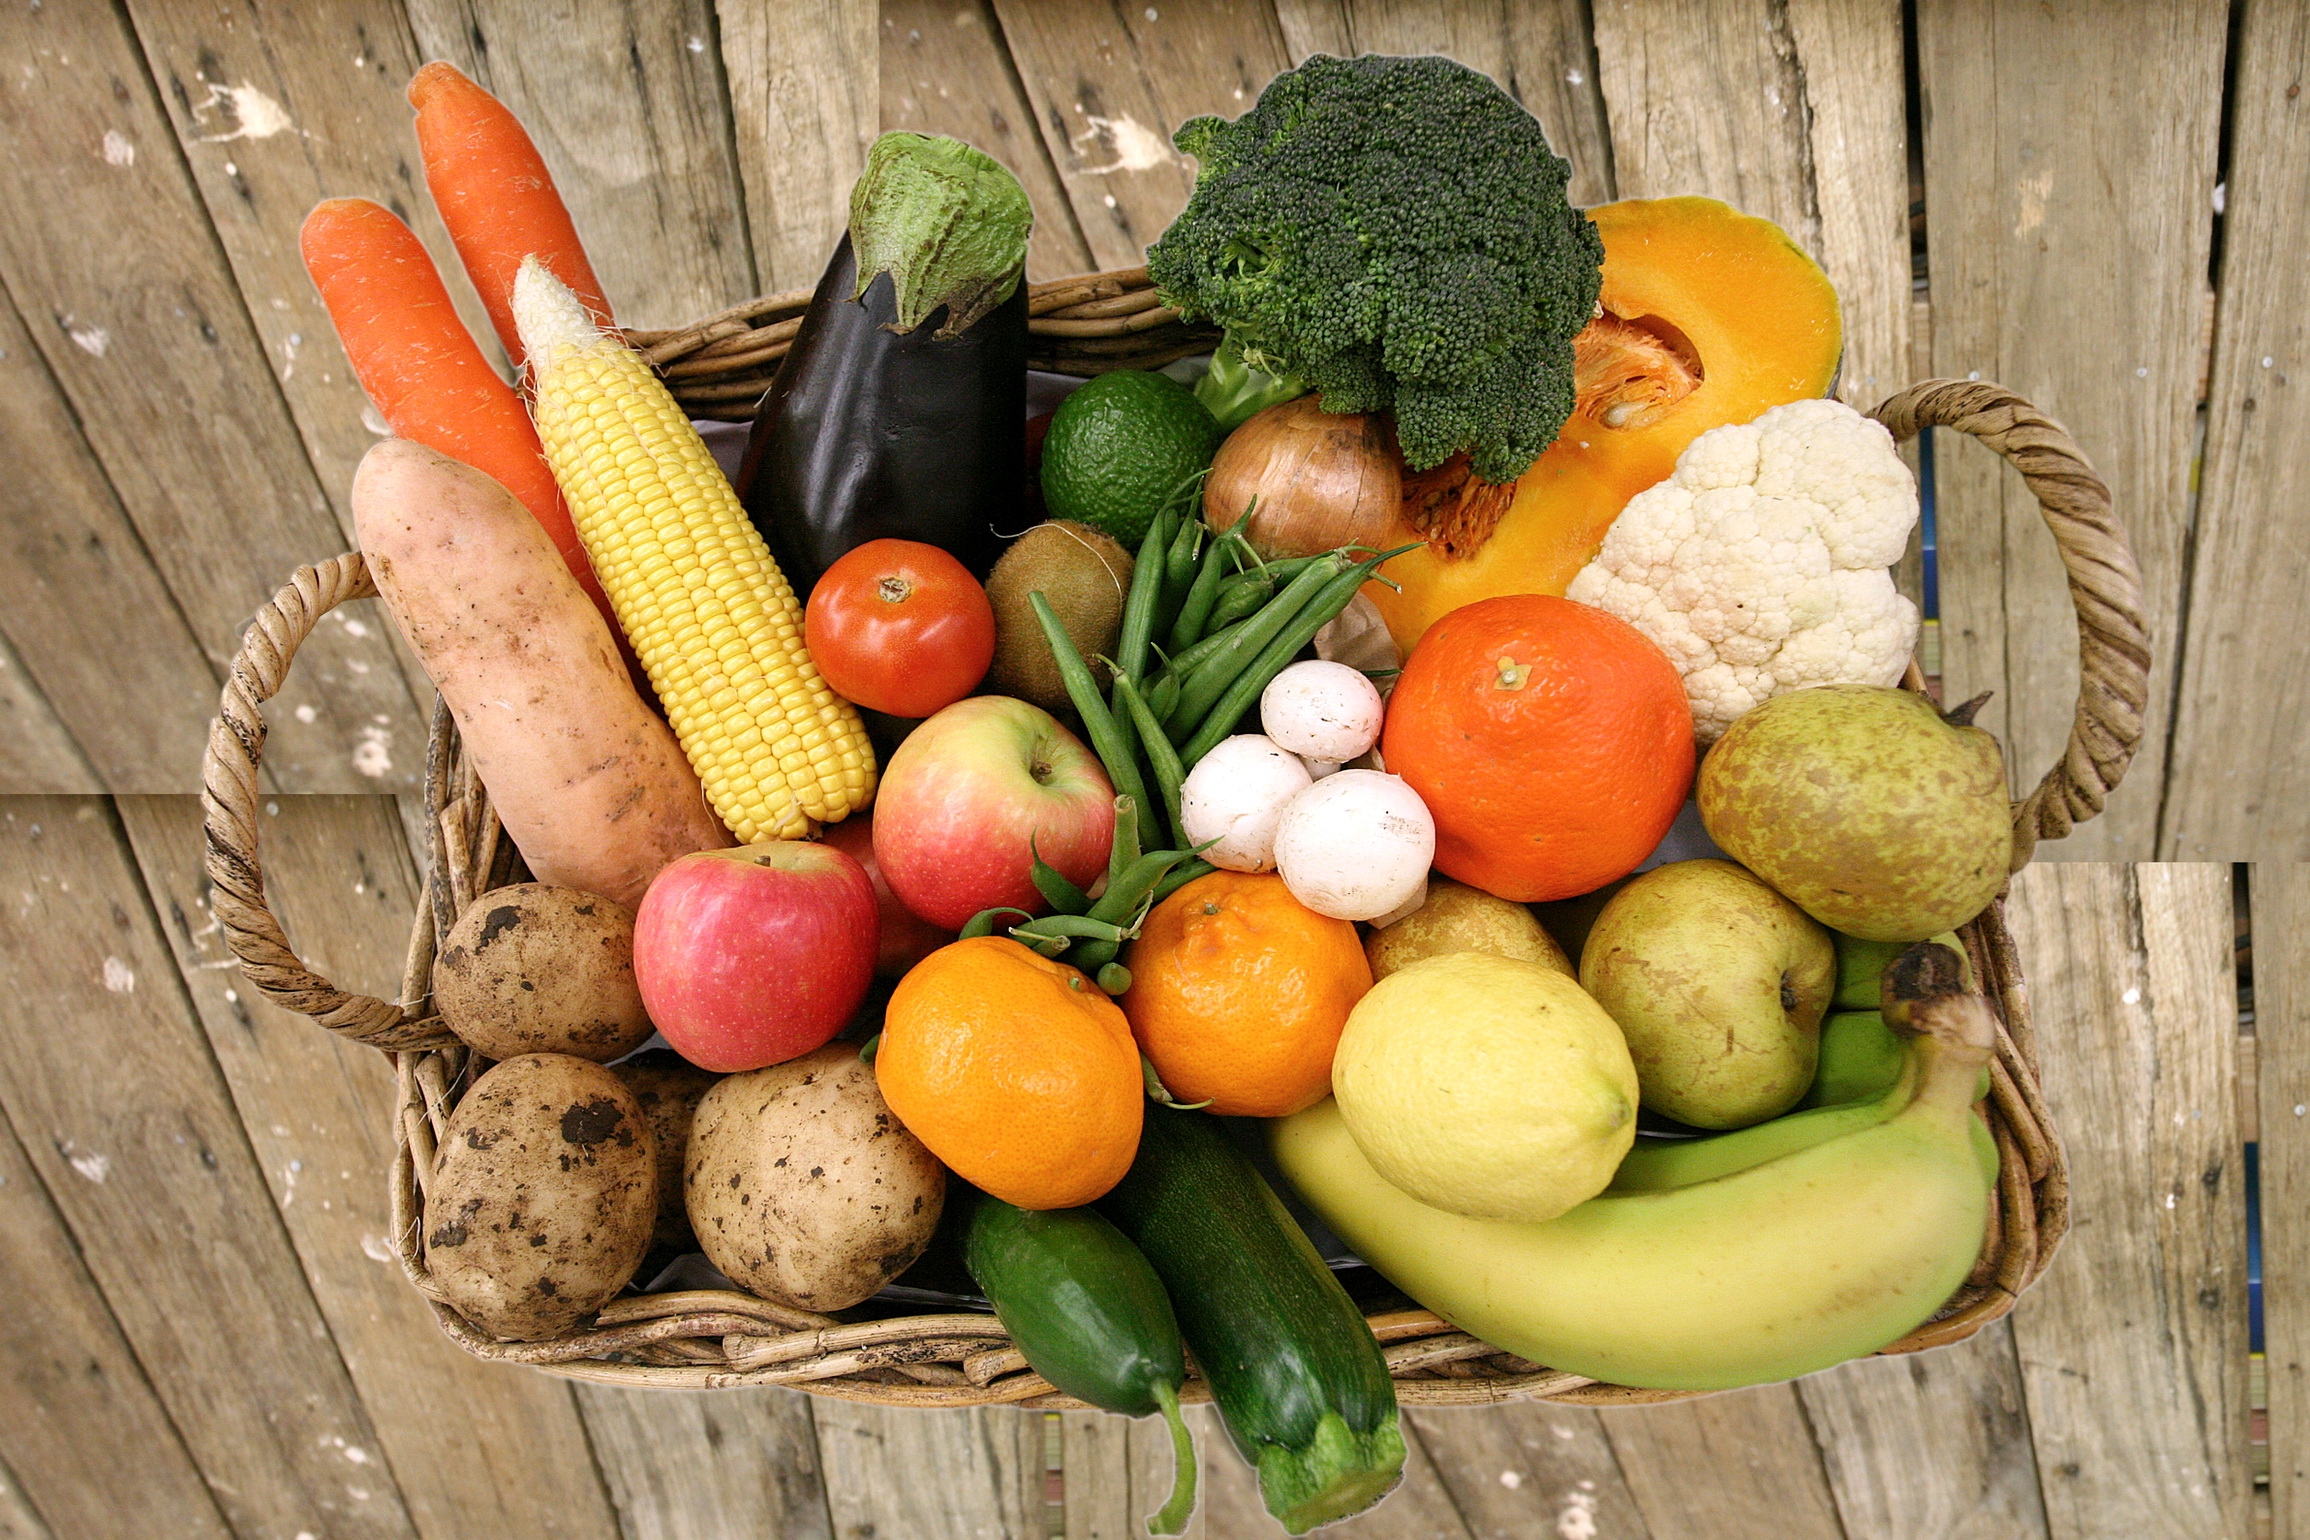 vegetables, fruits, food, basket